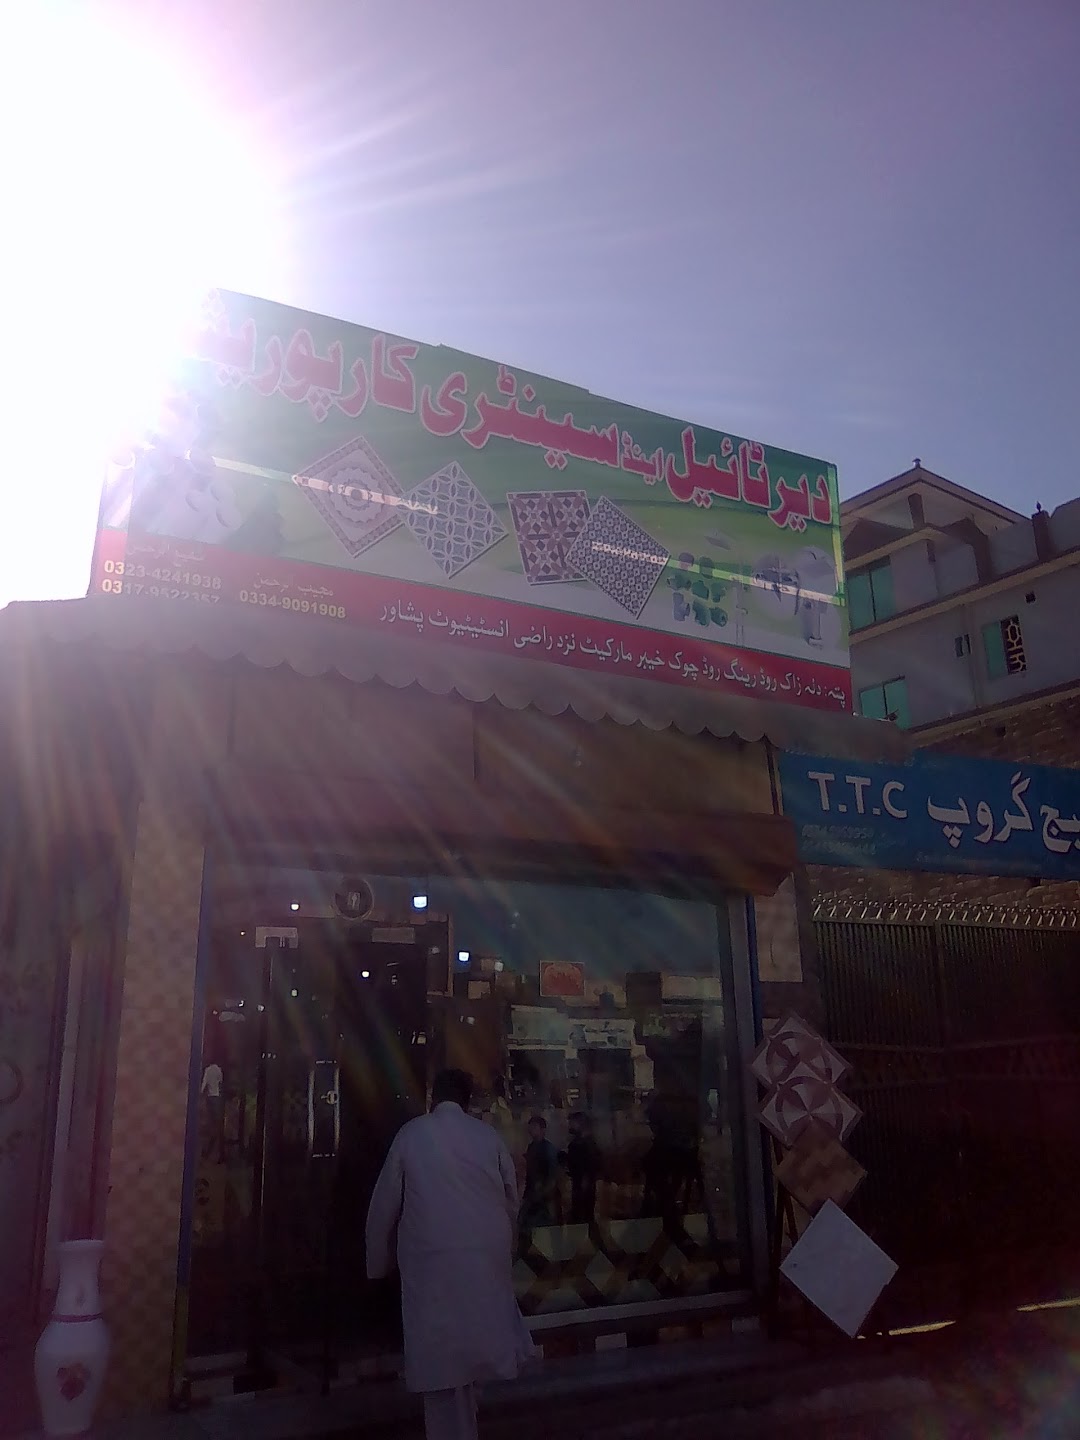 Badshah Saeed Plaza